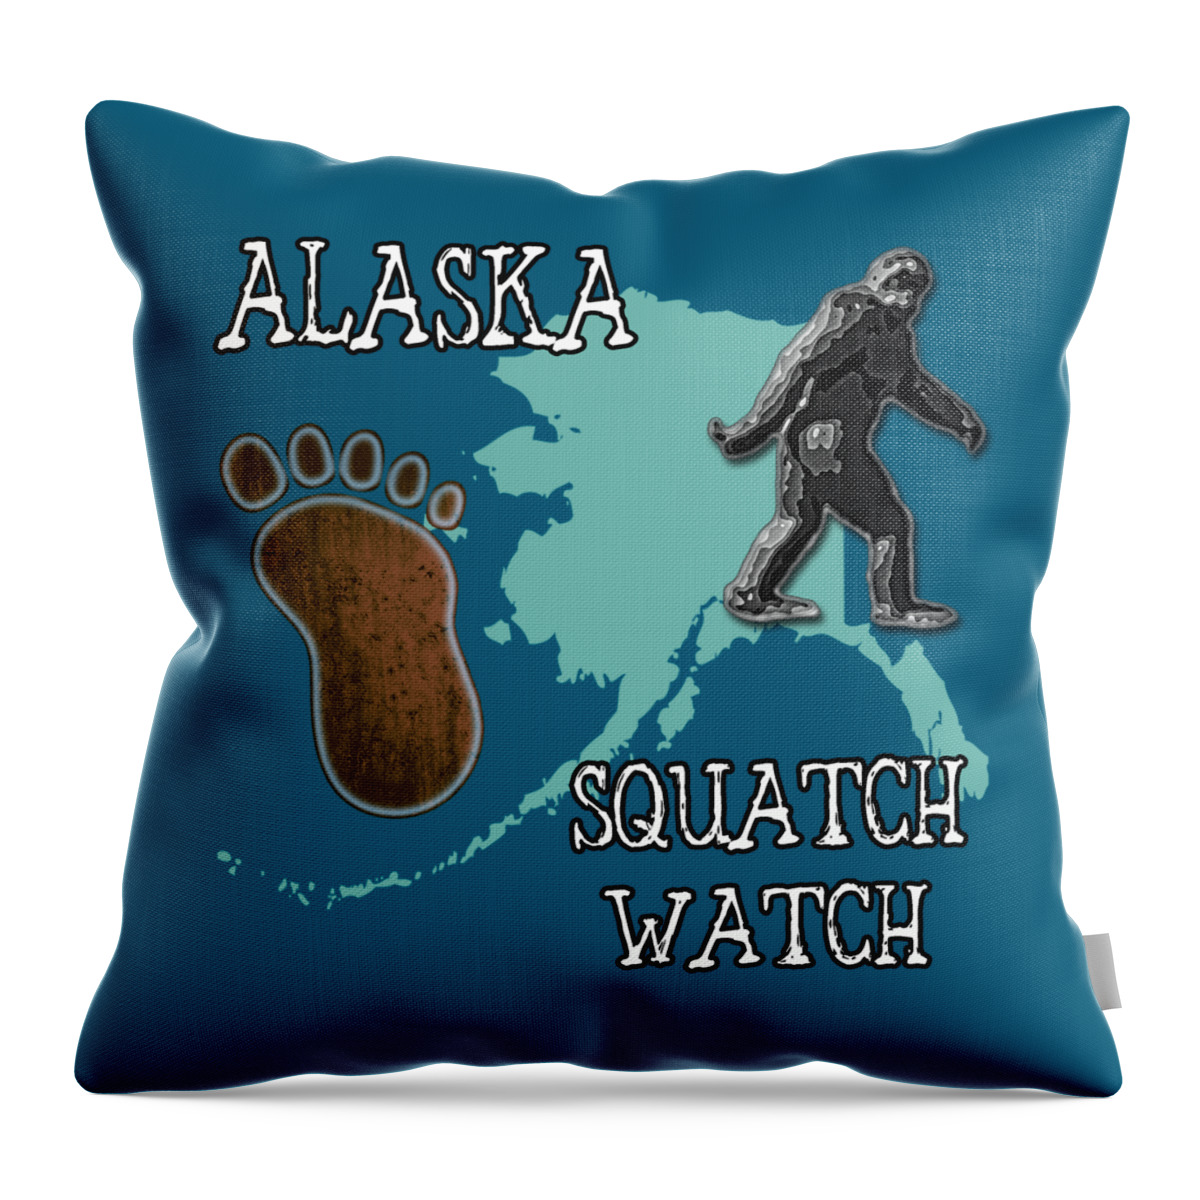 Alaska Throw Pillow featuring the digital art Alaska Squatch Watch by David G Paul